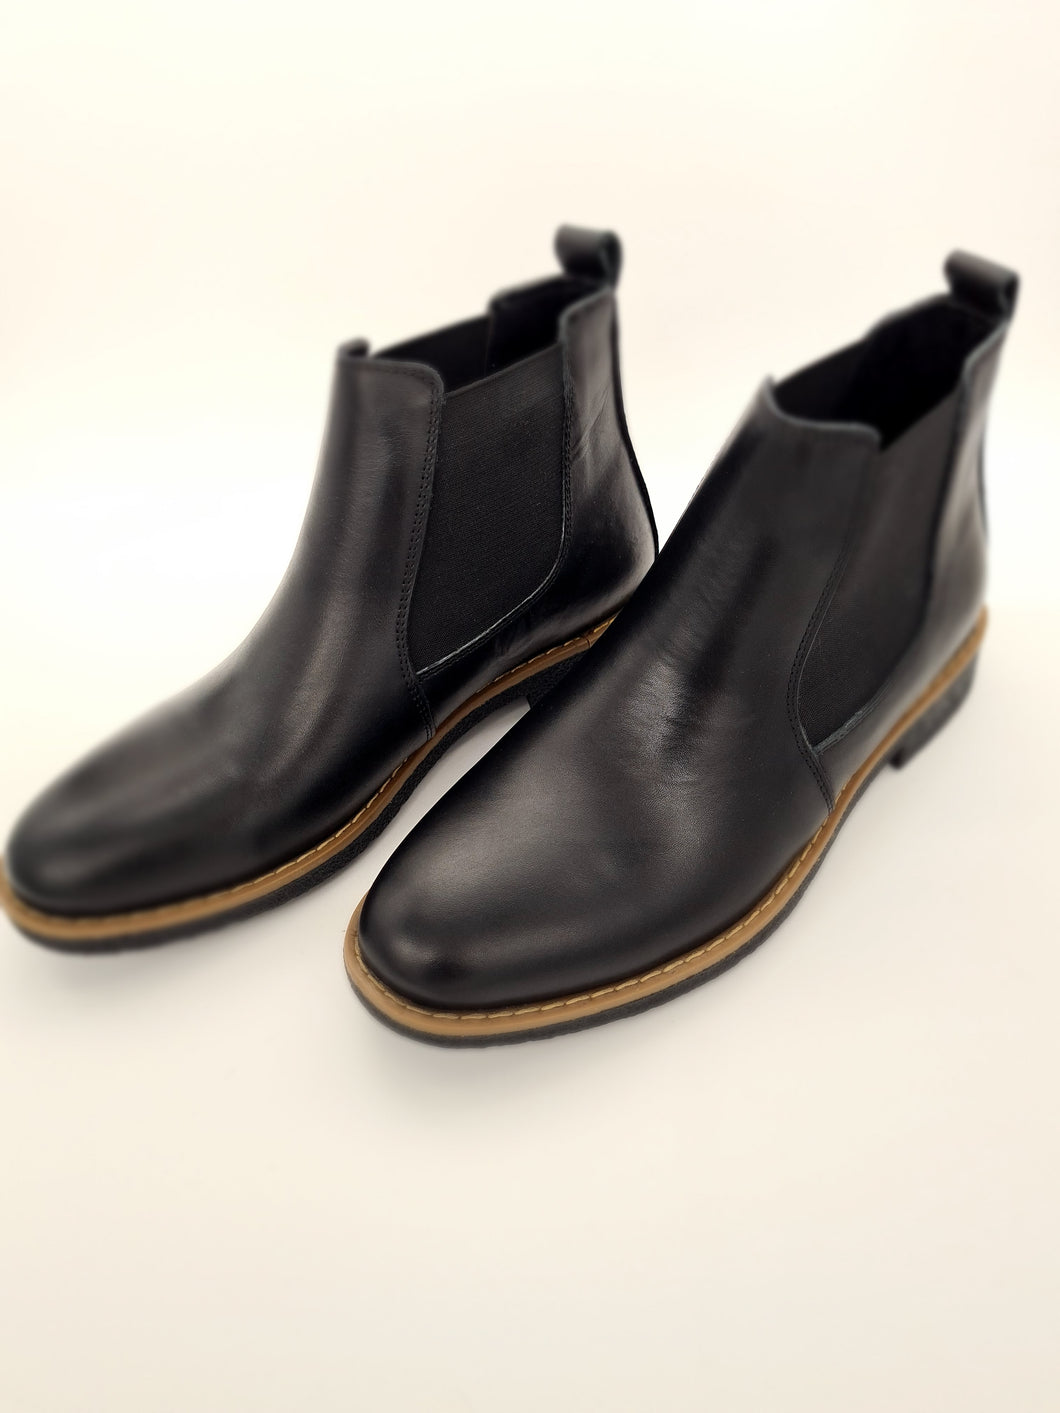 Damen Leder Chalsea Boots Gefüttert Stiefel Stiefeletten in Schwarz Größe 36-42